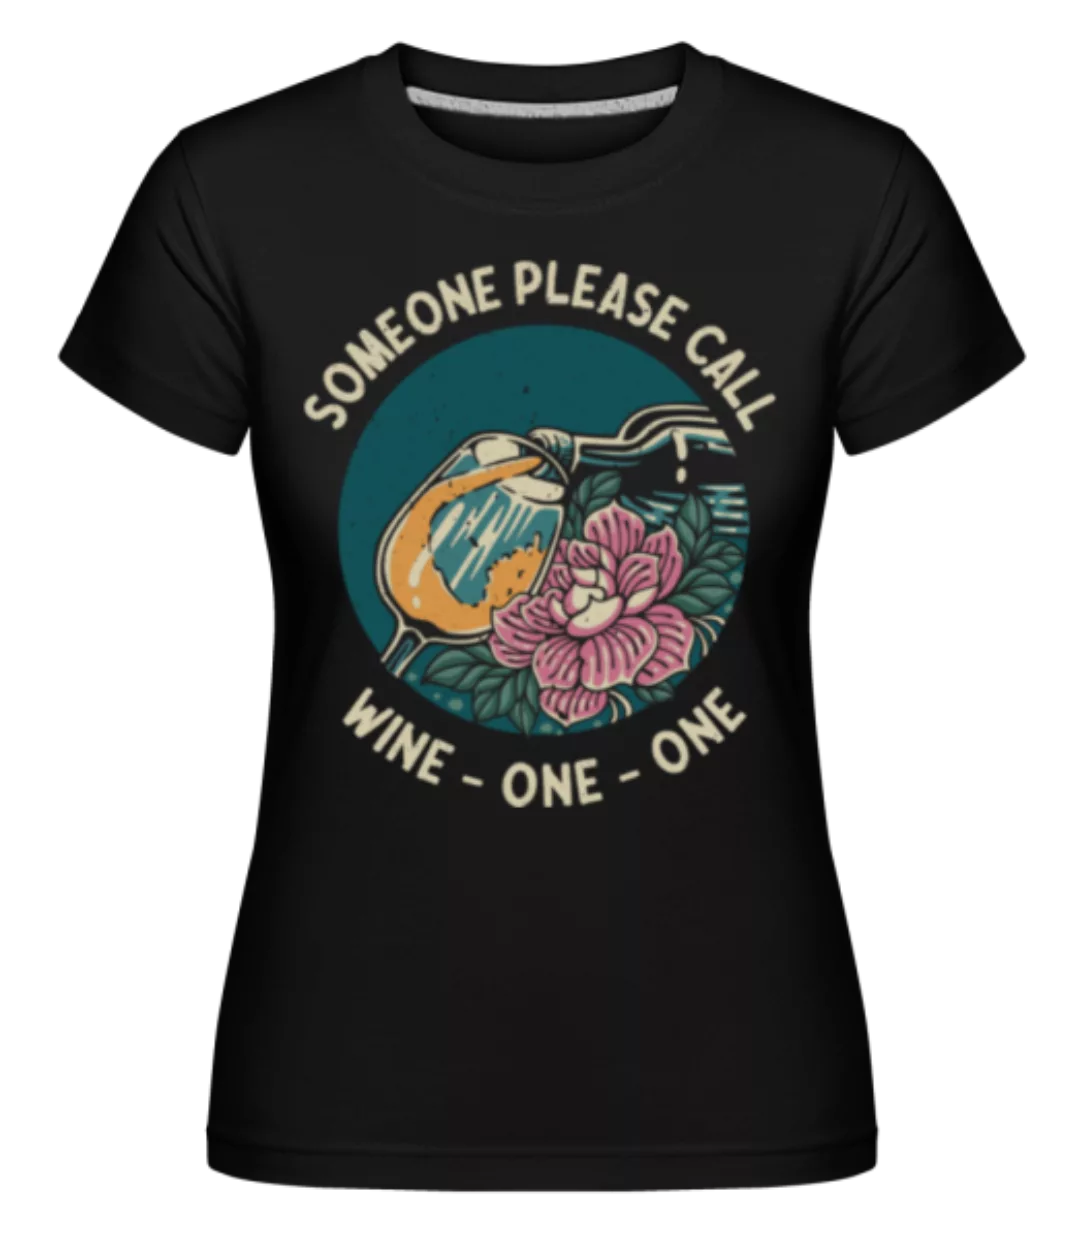 Someone Please Call Wine One One · Shirtinator Frauen T-Shirt günstig online kaufen